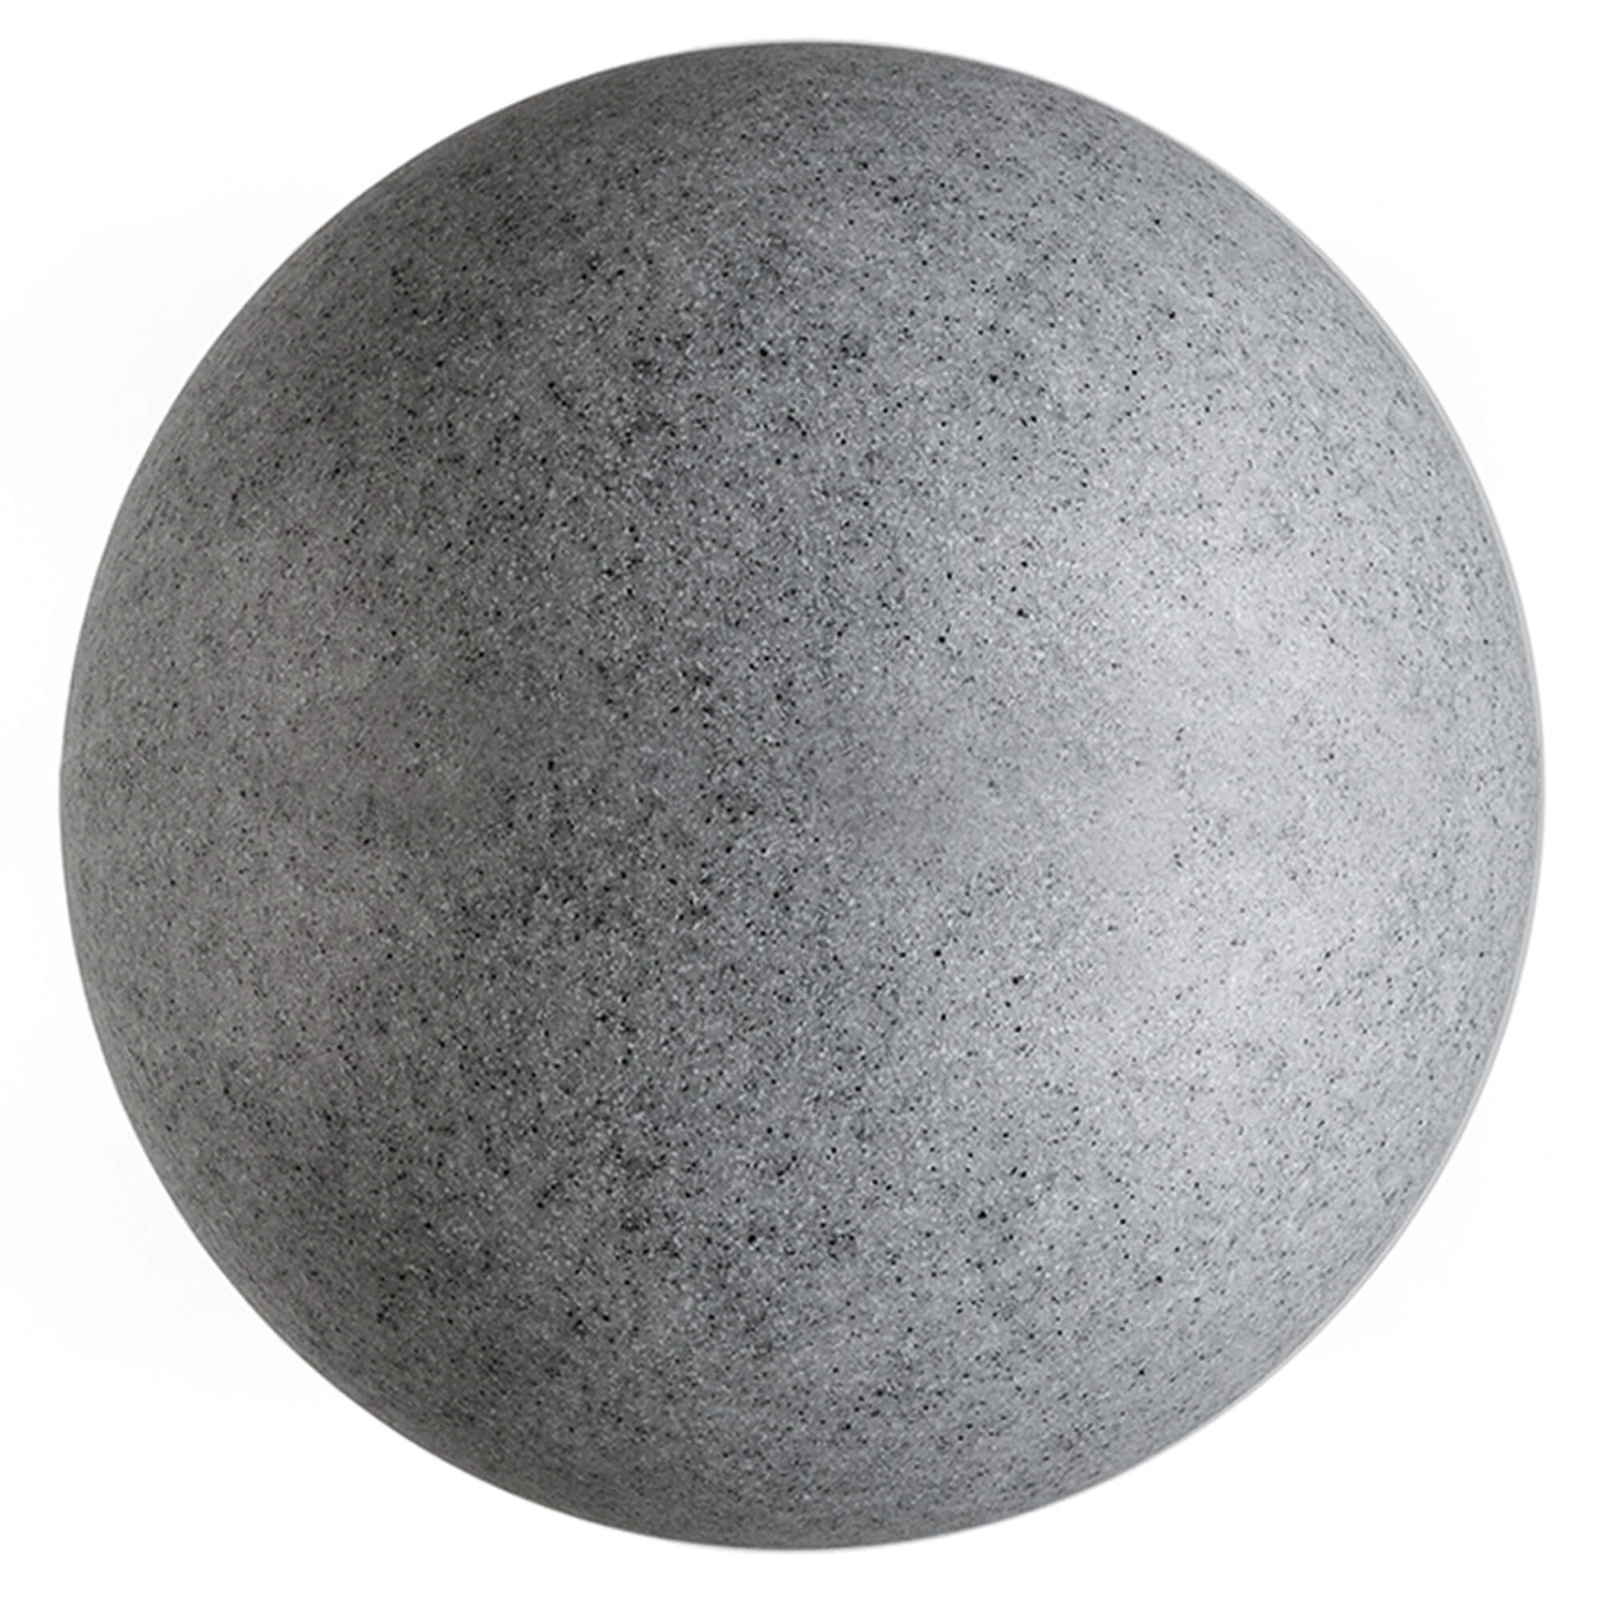 Lampada a globo per esterni con picchetto a terra, granito, Ø 56 cm